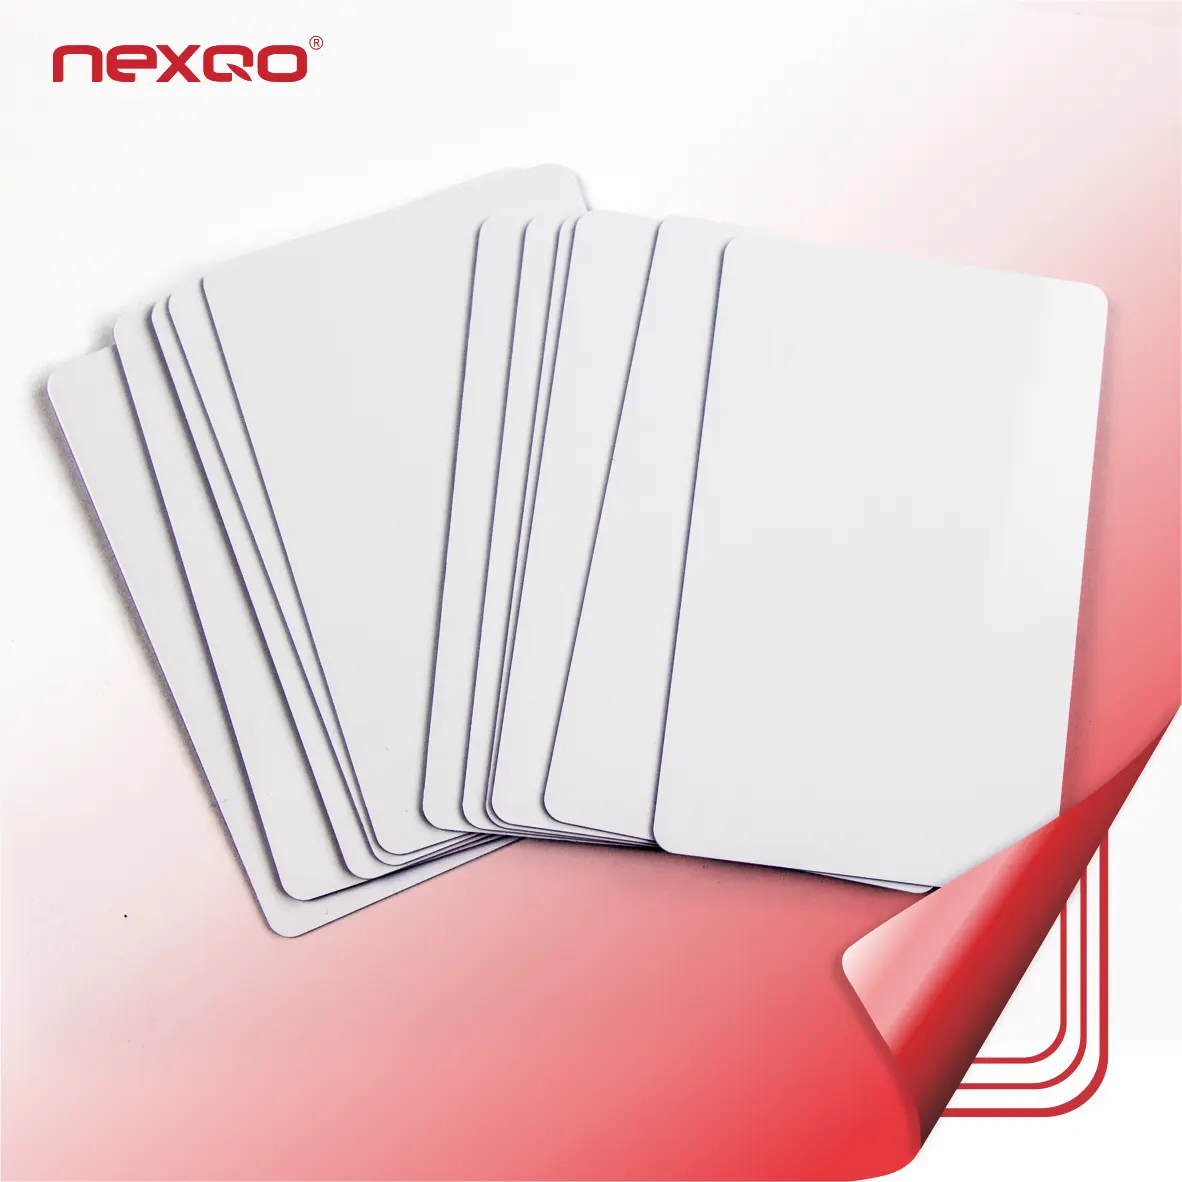 Kunststoff weiß leer PVC-Karte Kreditkarten größe mit F08-Chip für die Zugangs kontrolle RFID-Karte